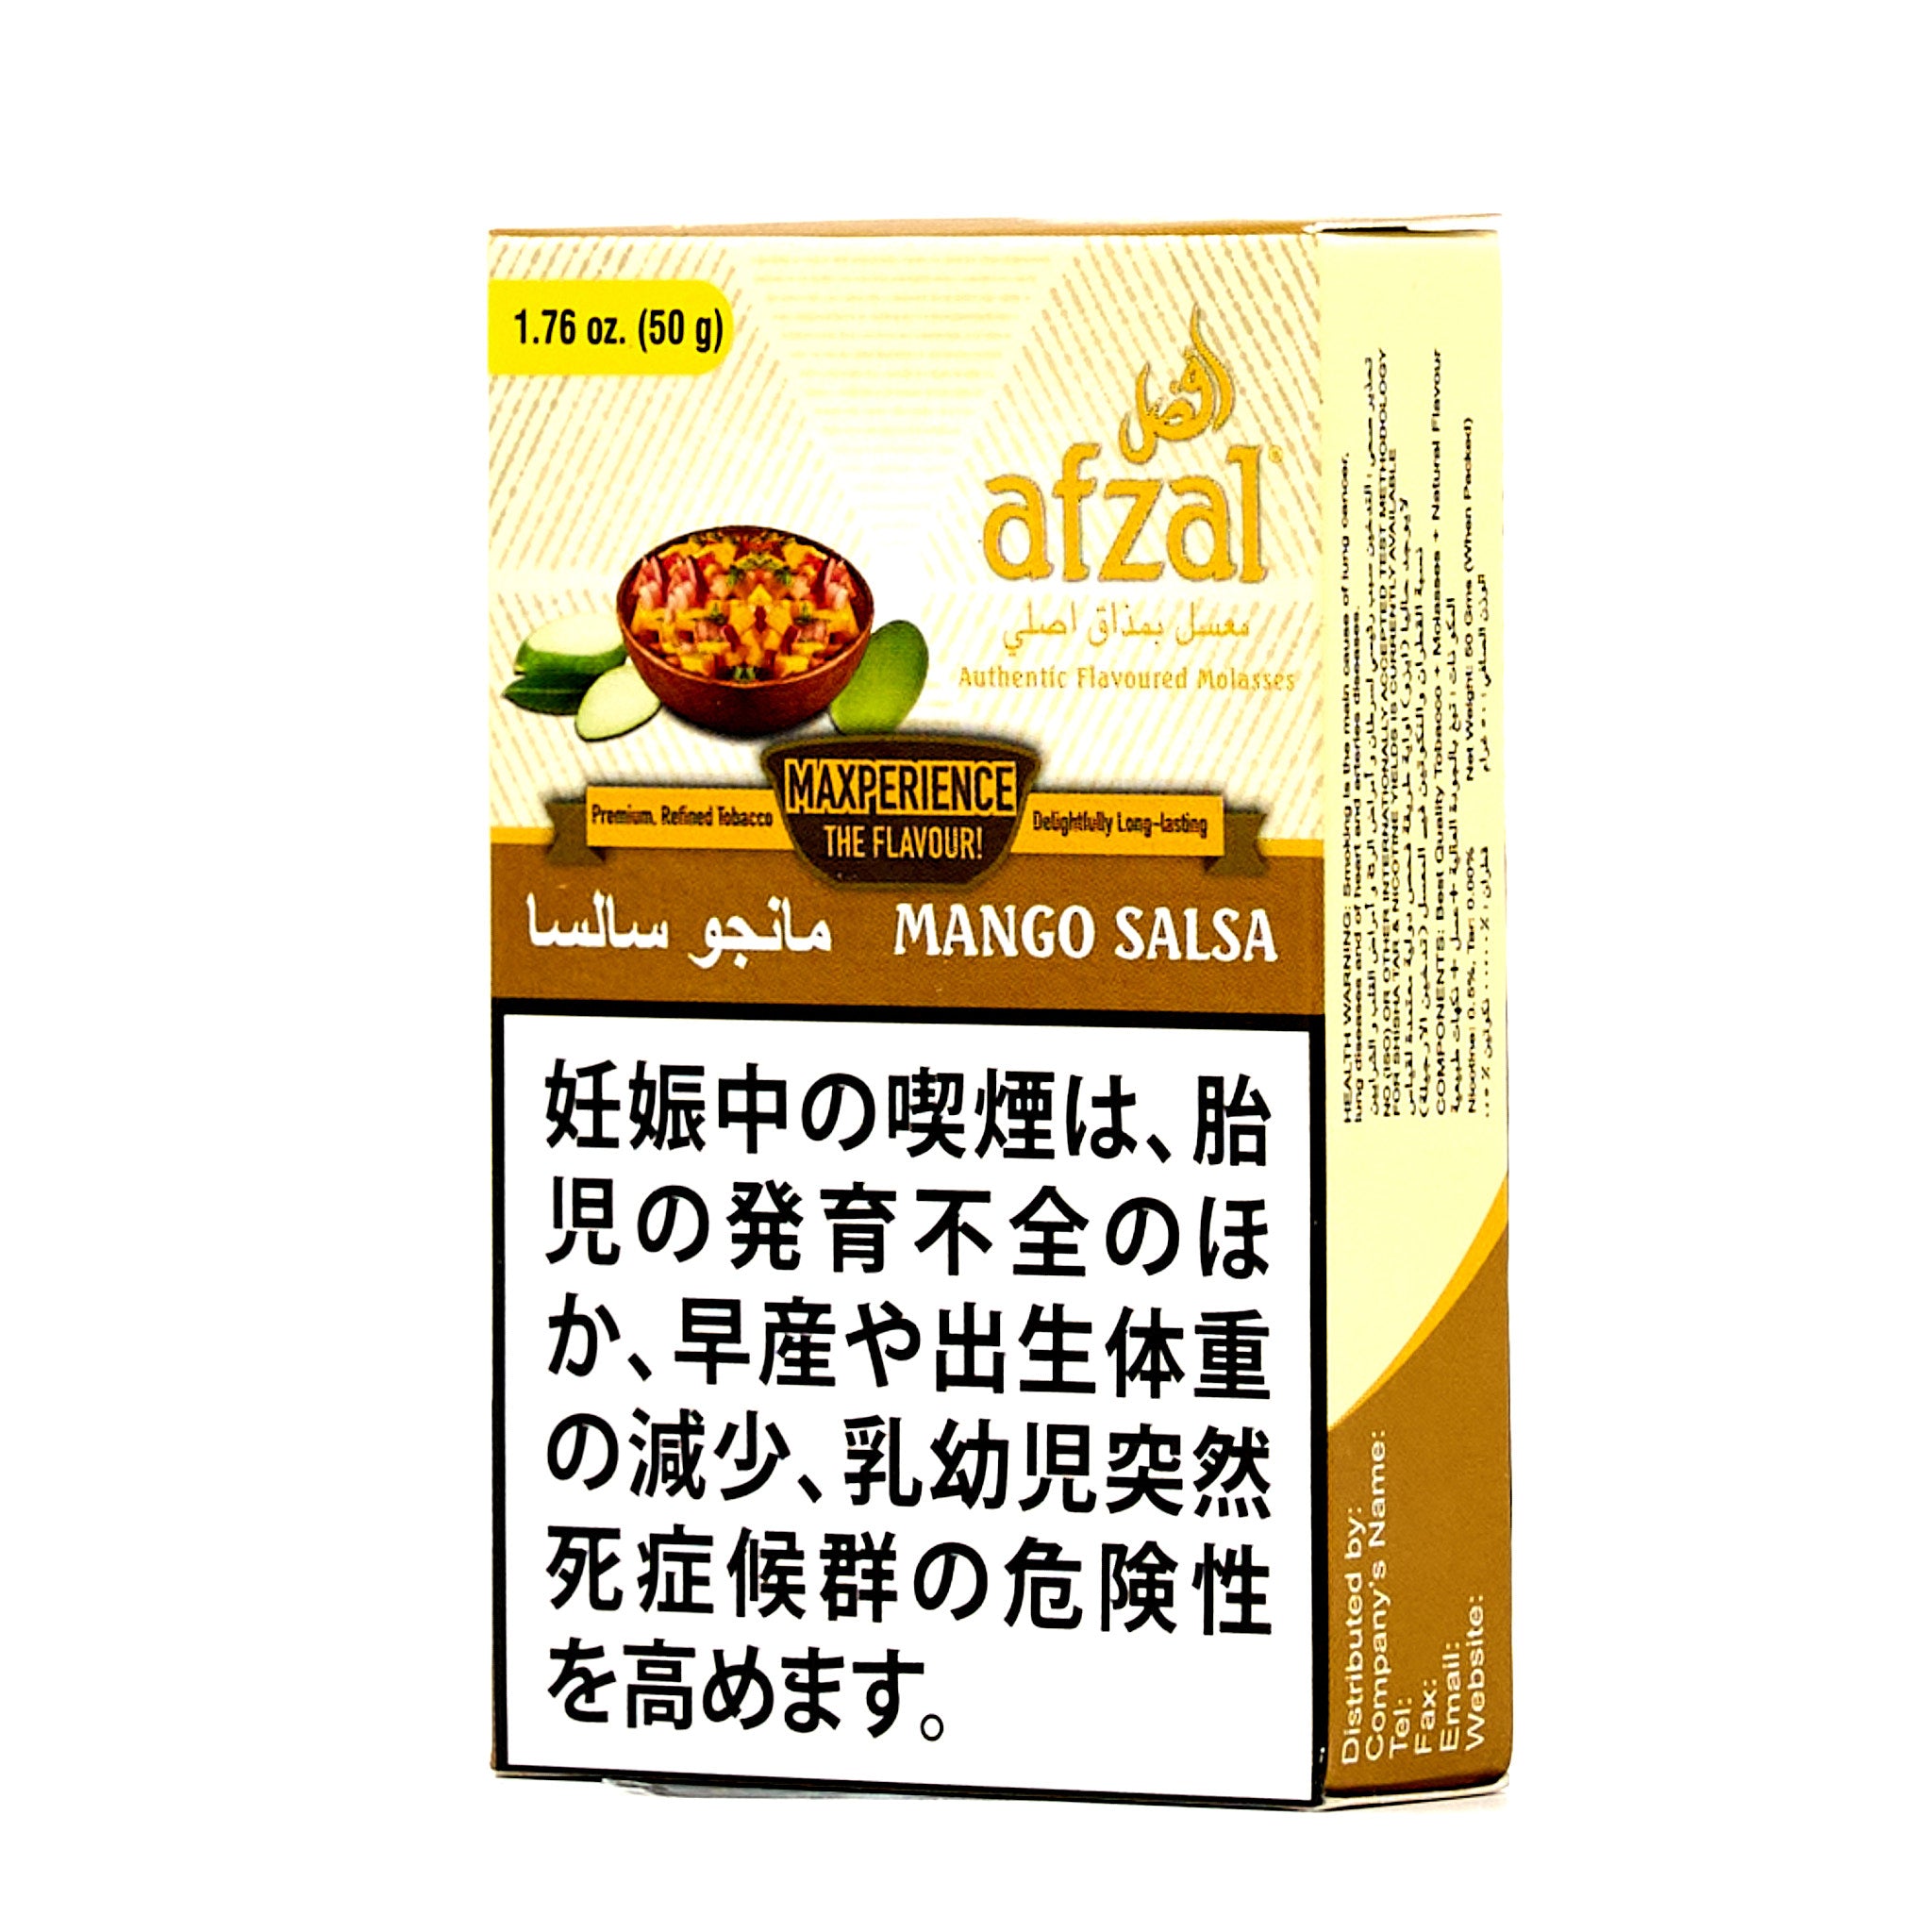 Mango Salsa / マンゴーサルサ (50g)